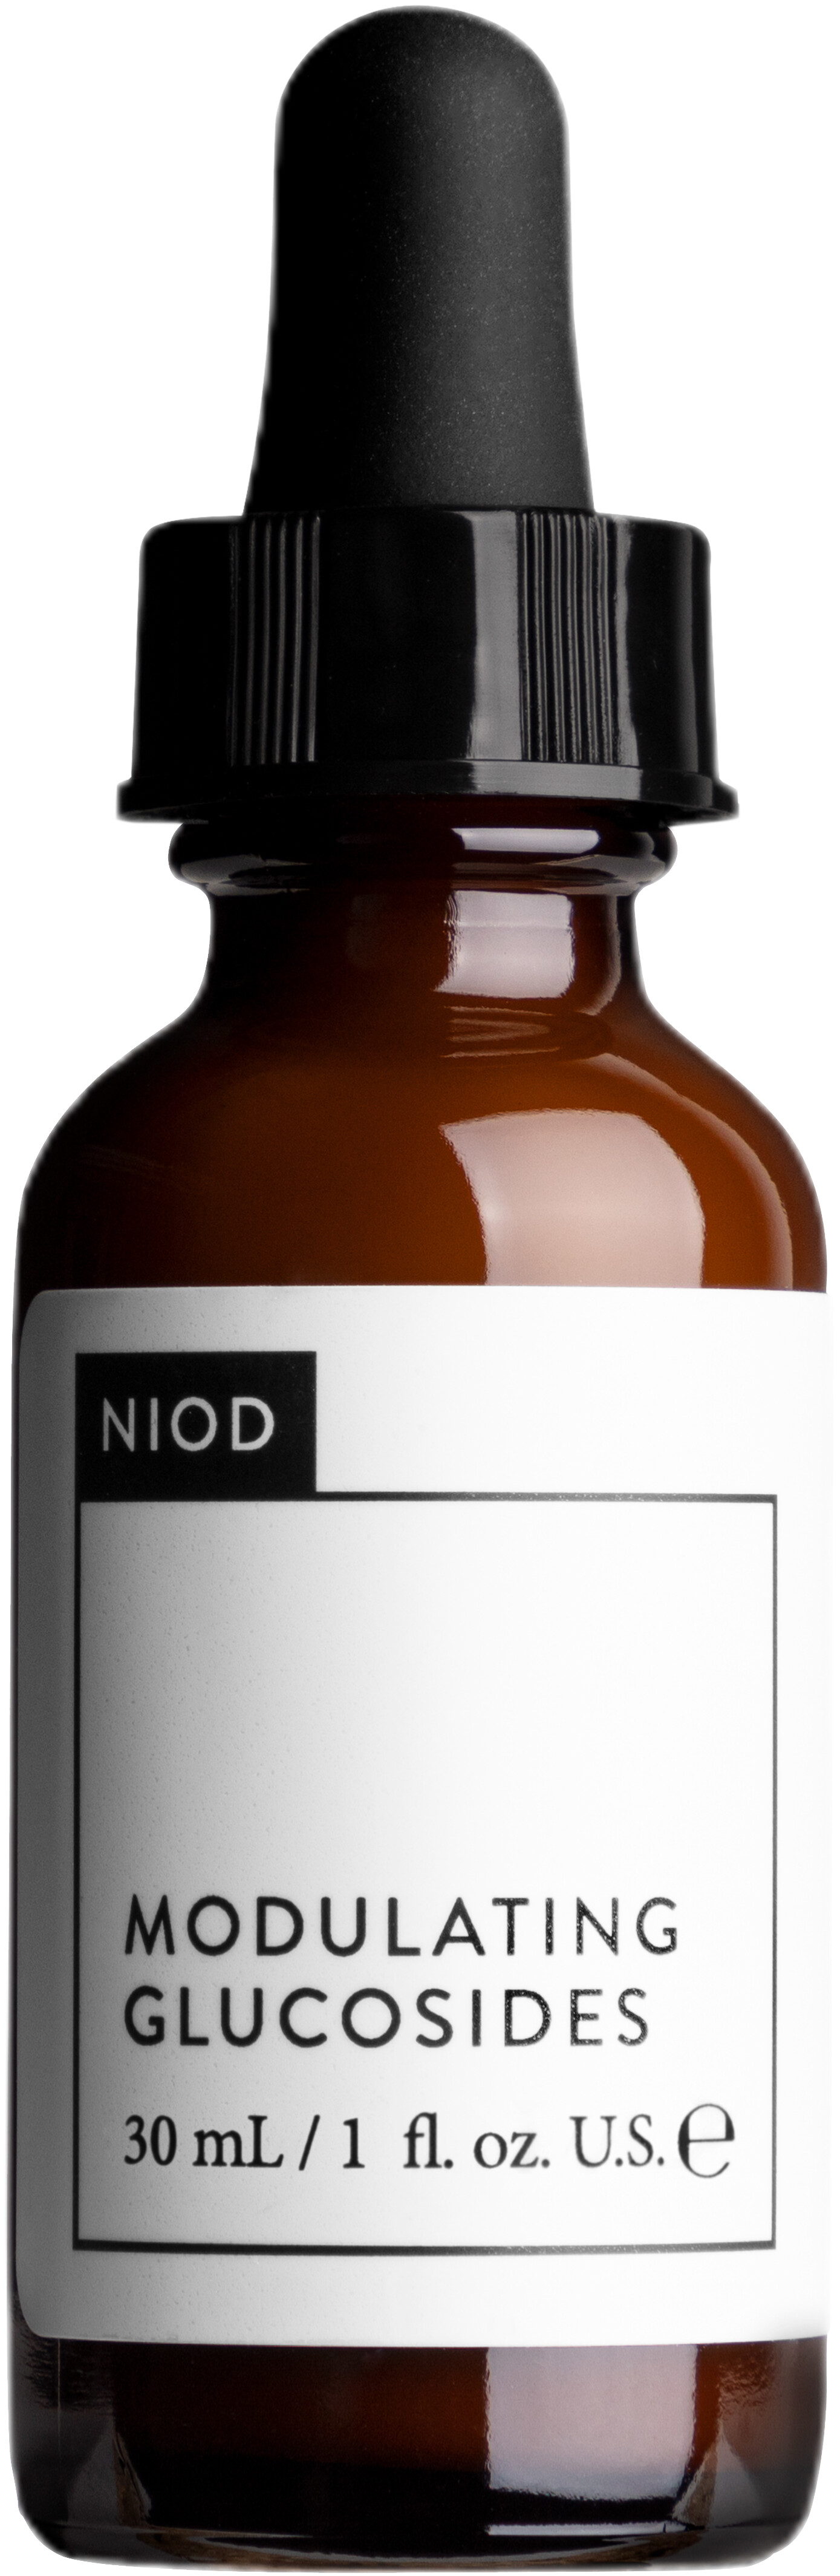 NIOD Modulating Glucosides 30ml